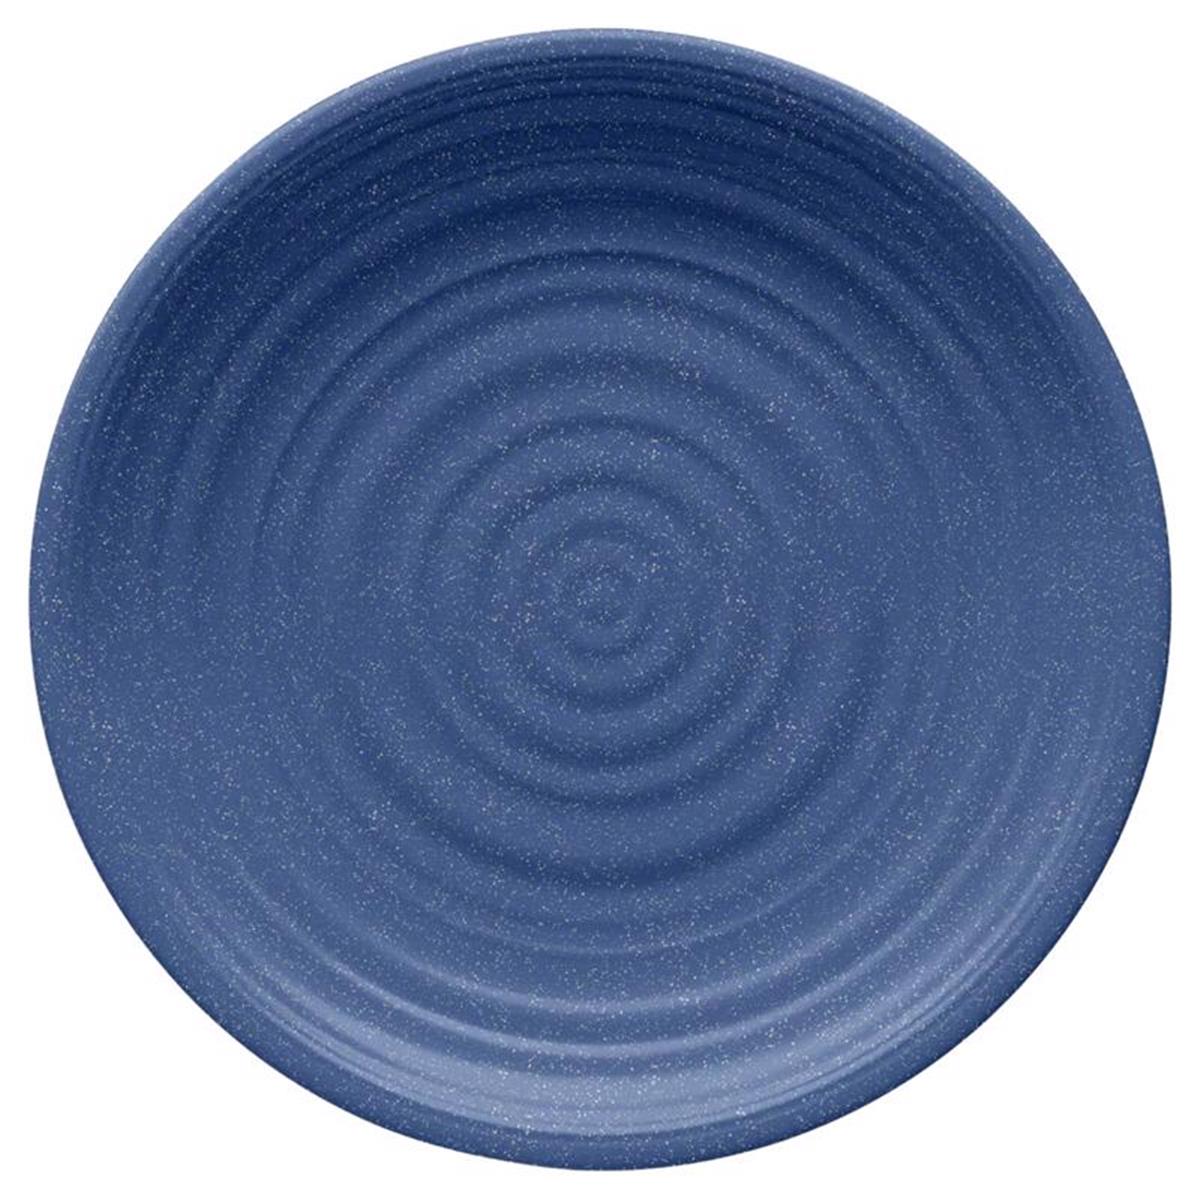 Picture of Tarhong 6060387 Blue Bamboo & Fiber Artisan Dinner Plate